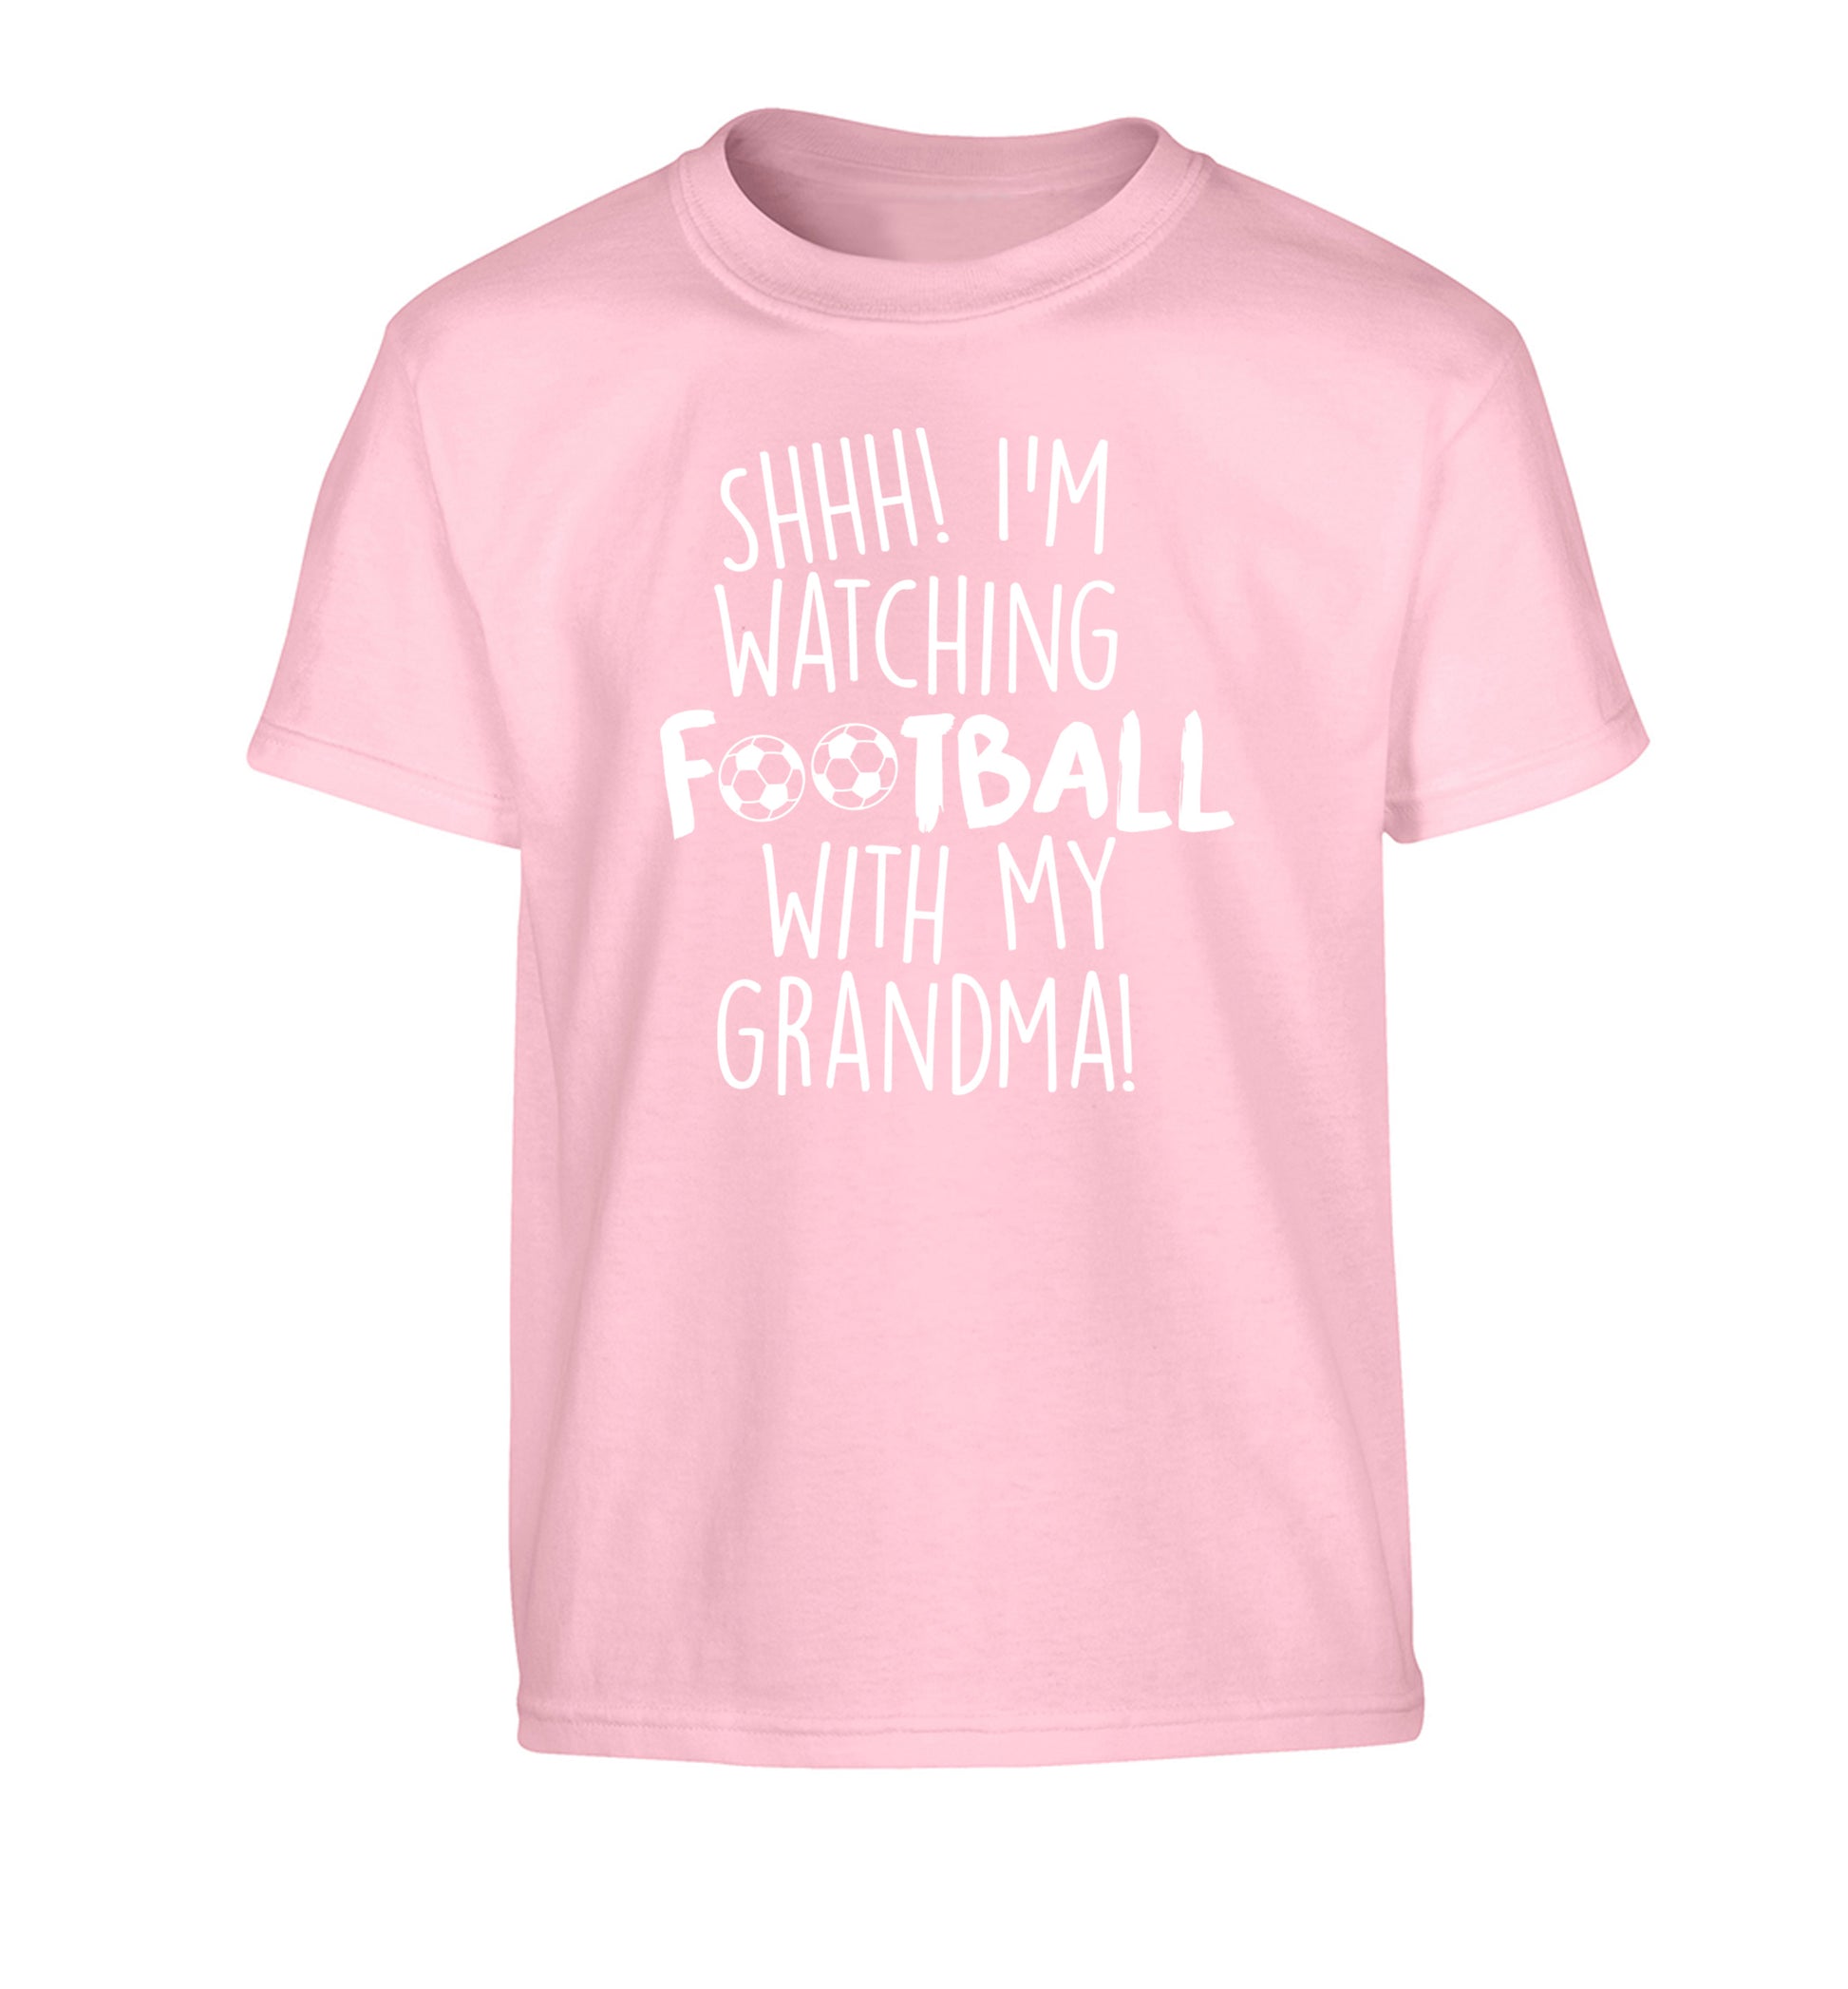 Shhh I'm watching football with my grandma Children's light pink Tshirt 12-14 Years